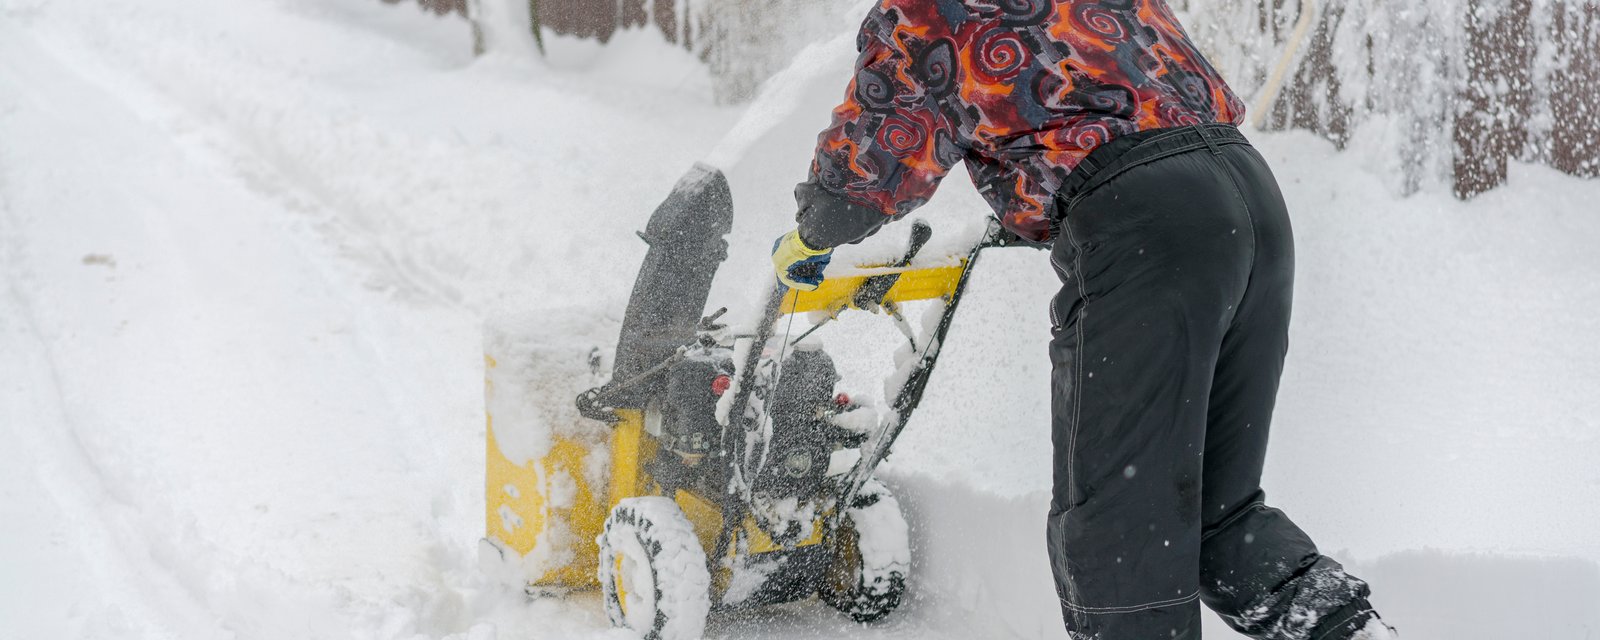 Les Québécois n'ont pas fini avec la neige cet hiver, une nouvelle bordée s'en vient